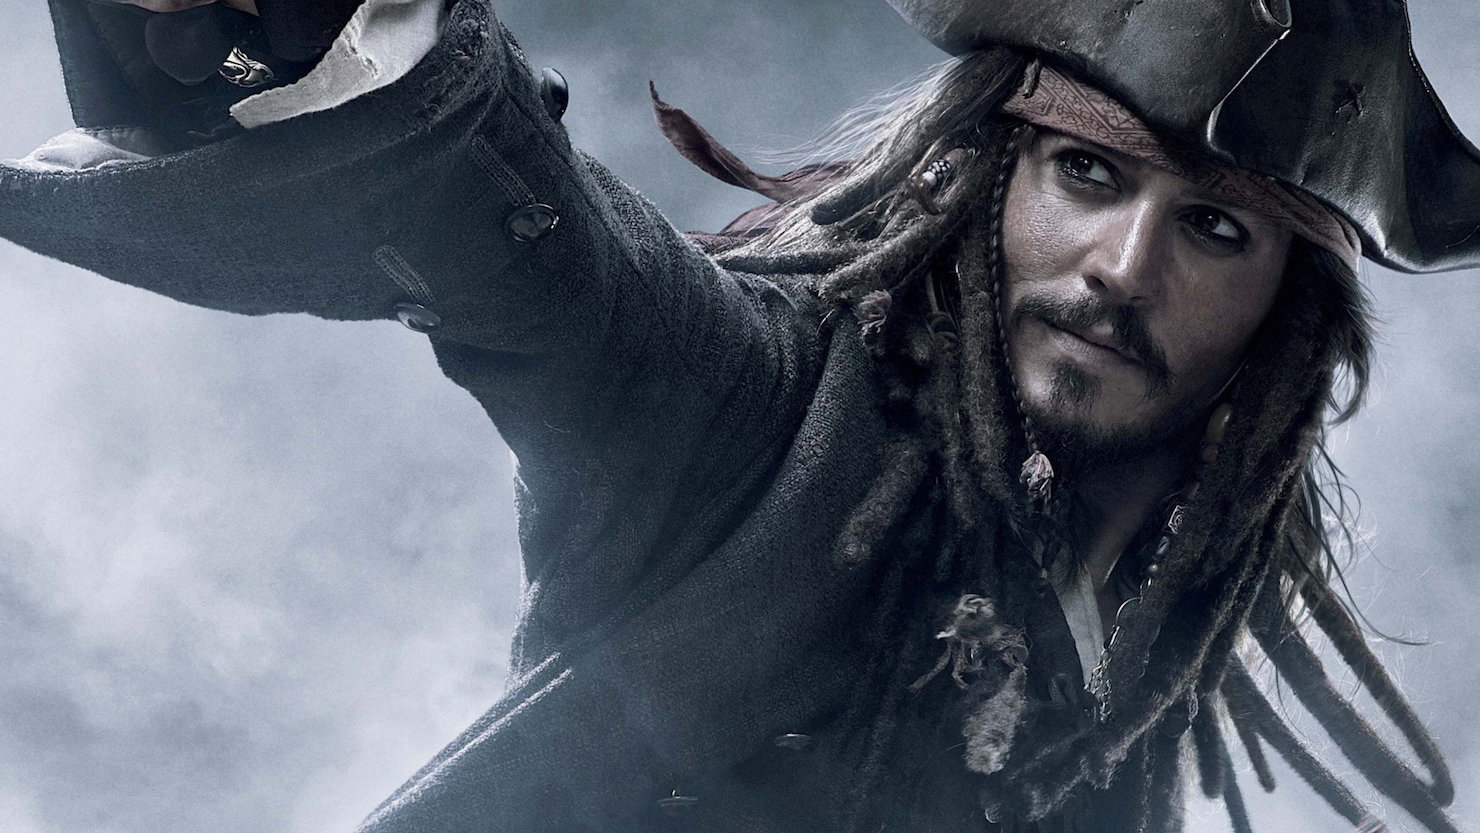 ¡Capitán Jack Sparrow! Piratas del Caribe 6 sin Johnny Depp escándalo, fans enfadados y el hashtag #NoJohnnyNoPirates